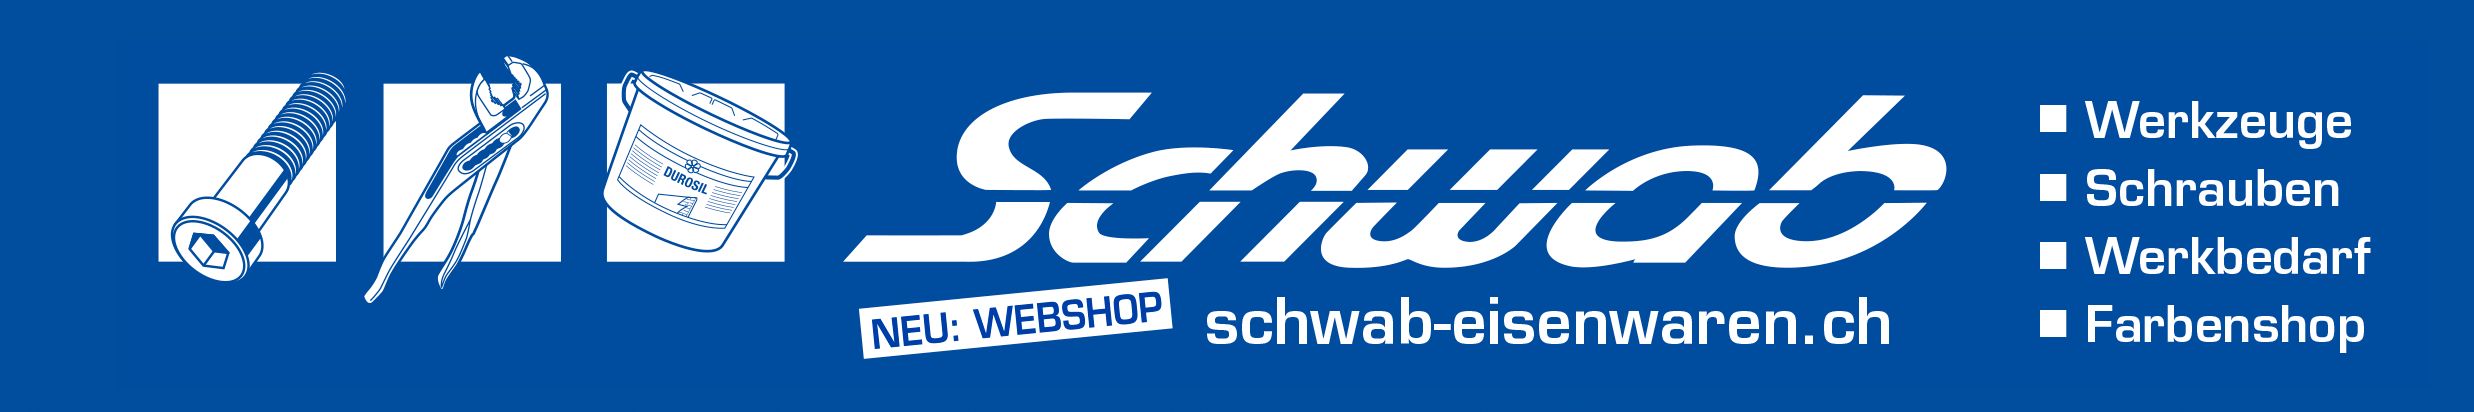 (c) Werkzeug-shop.ch